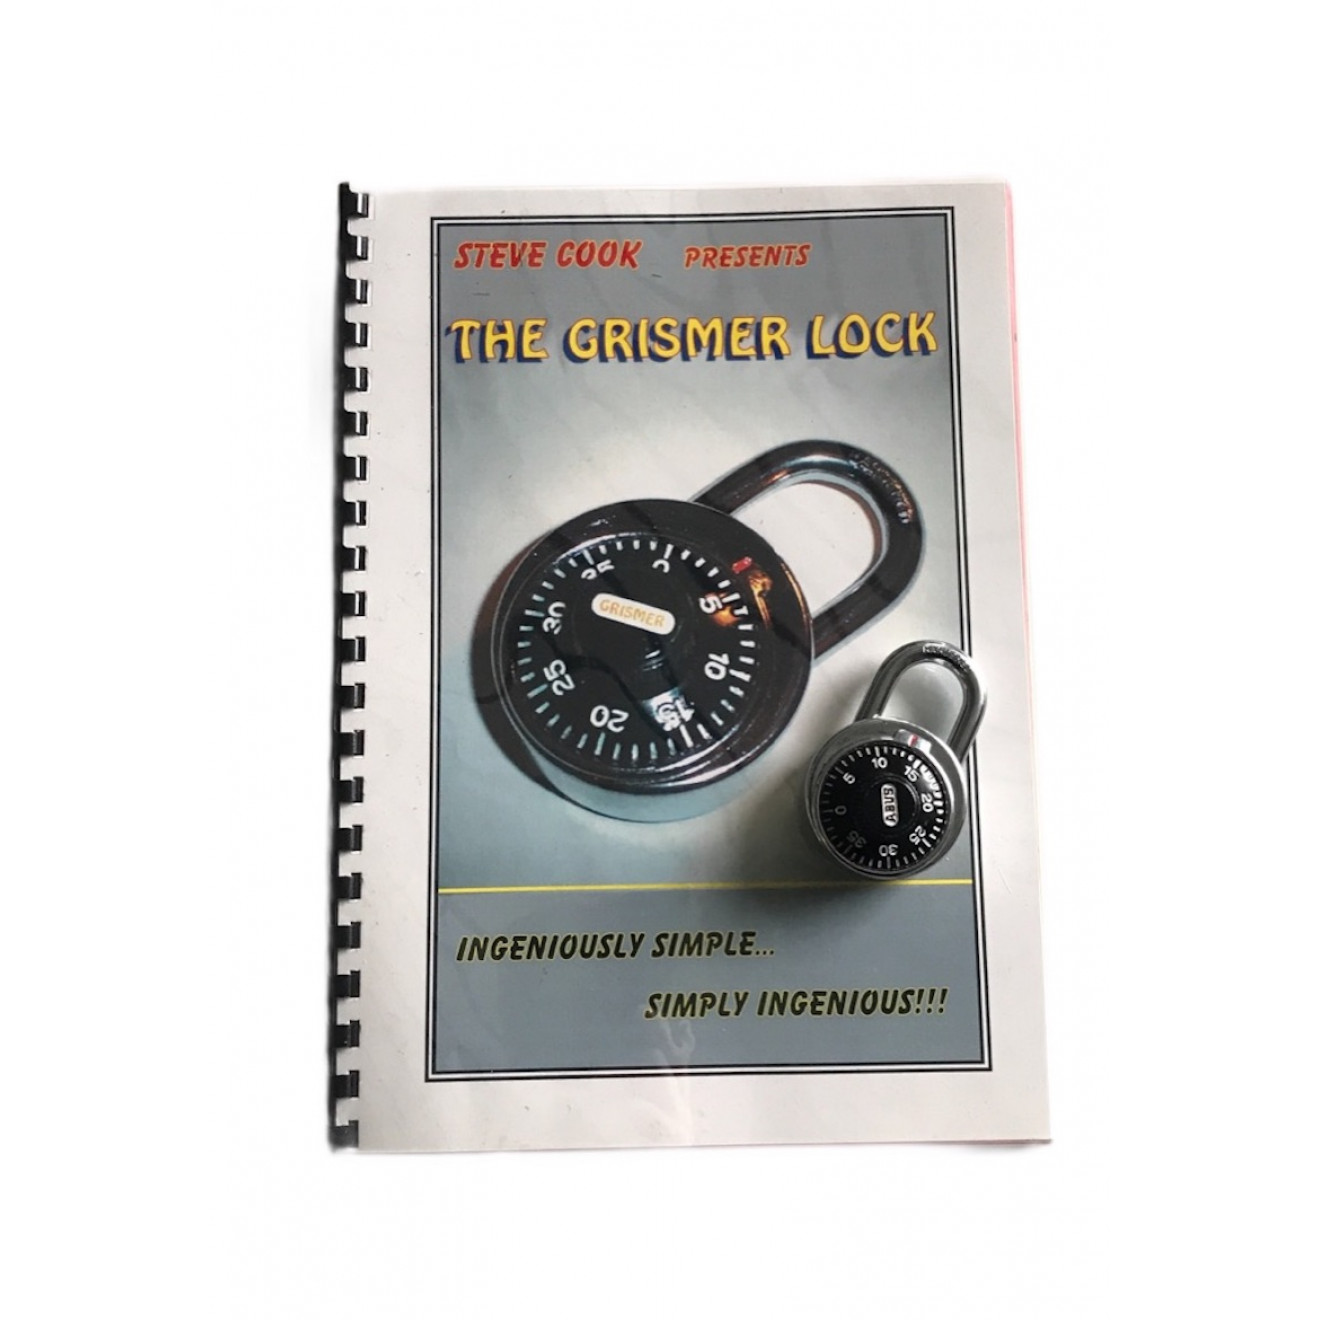 The Grismer Lock (Steve Cook Version)